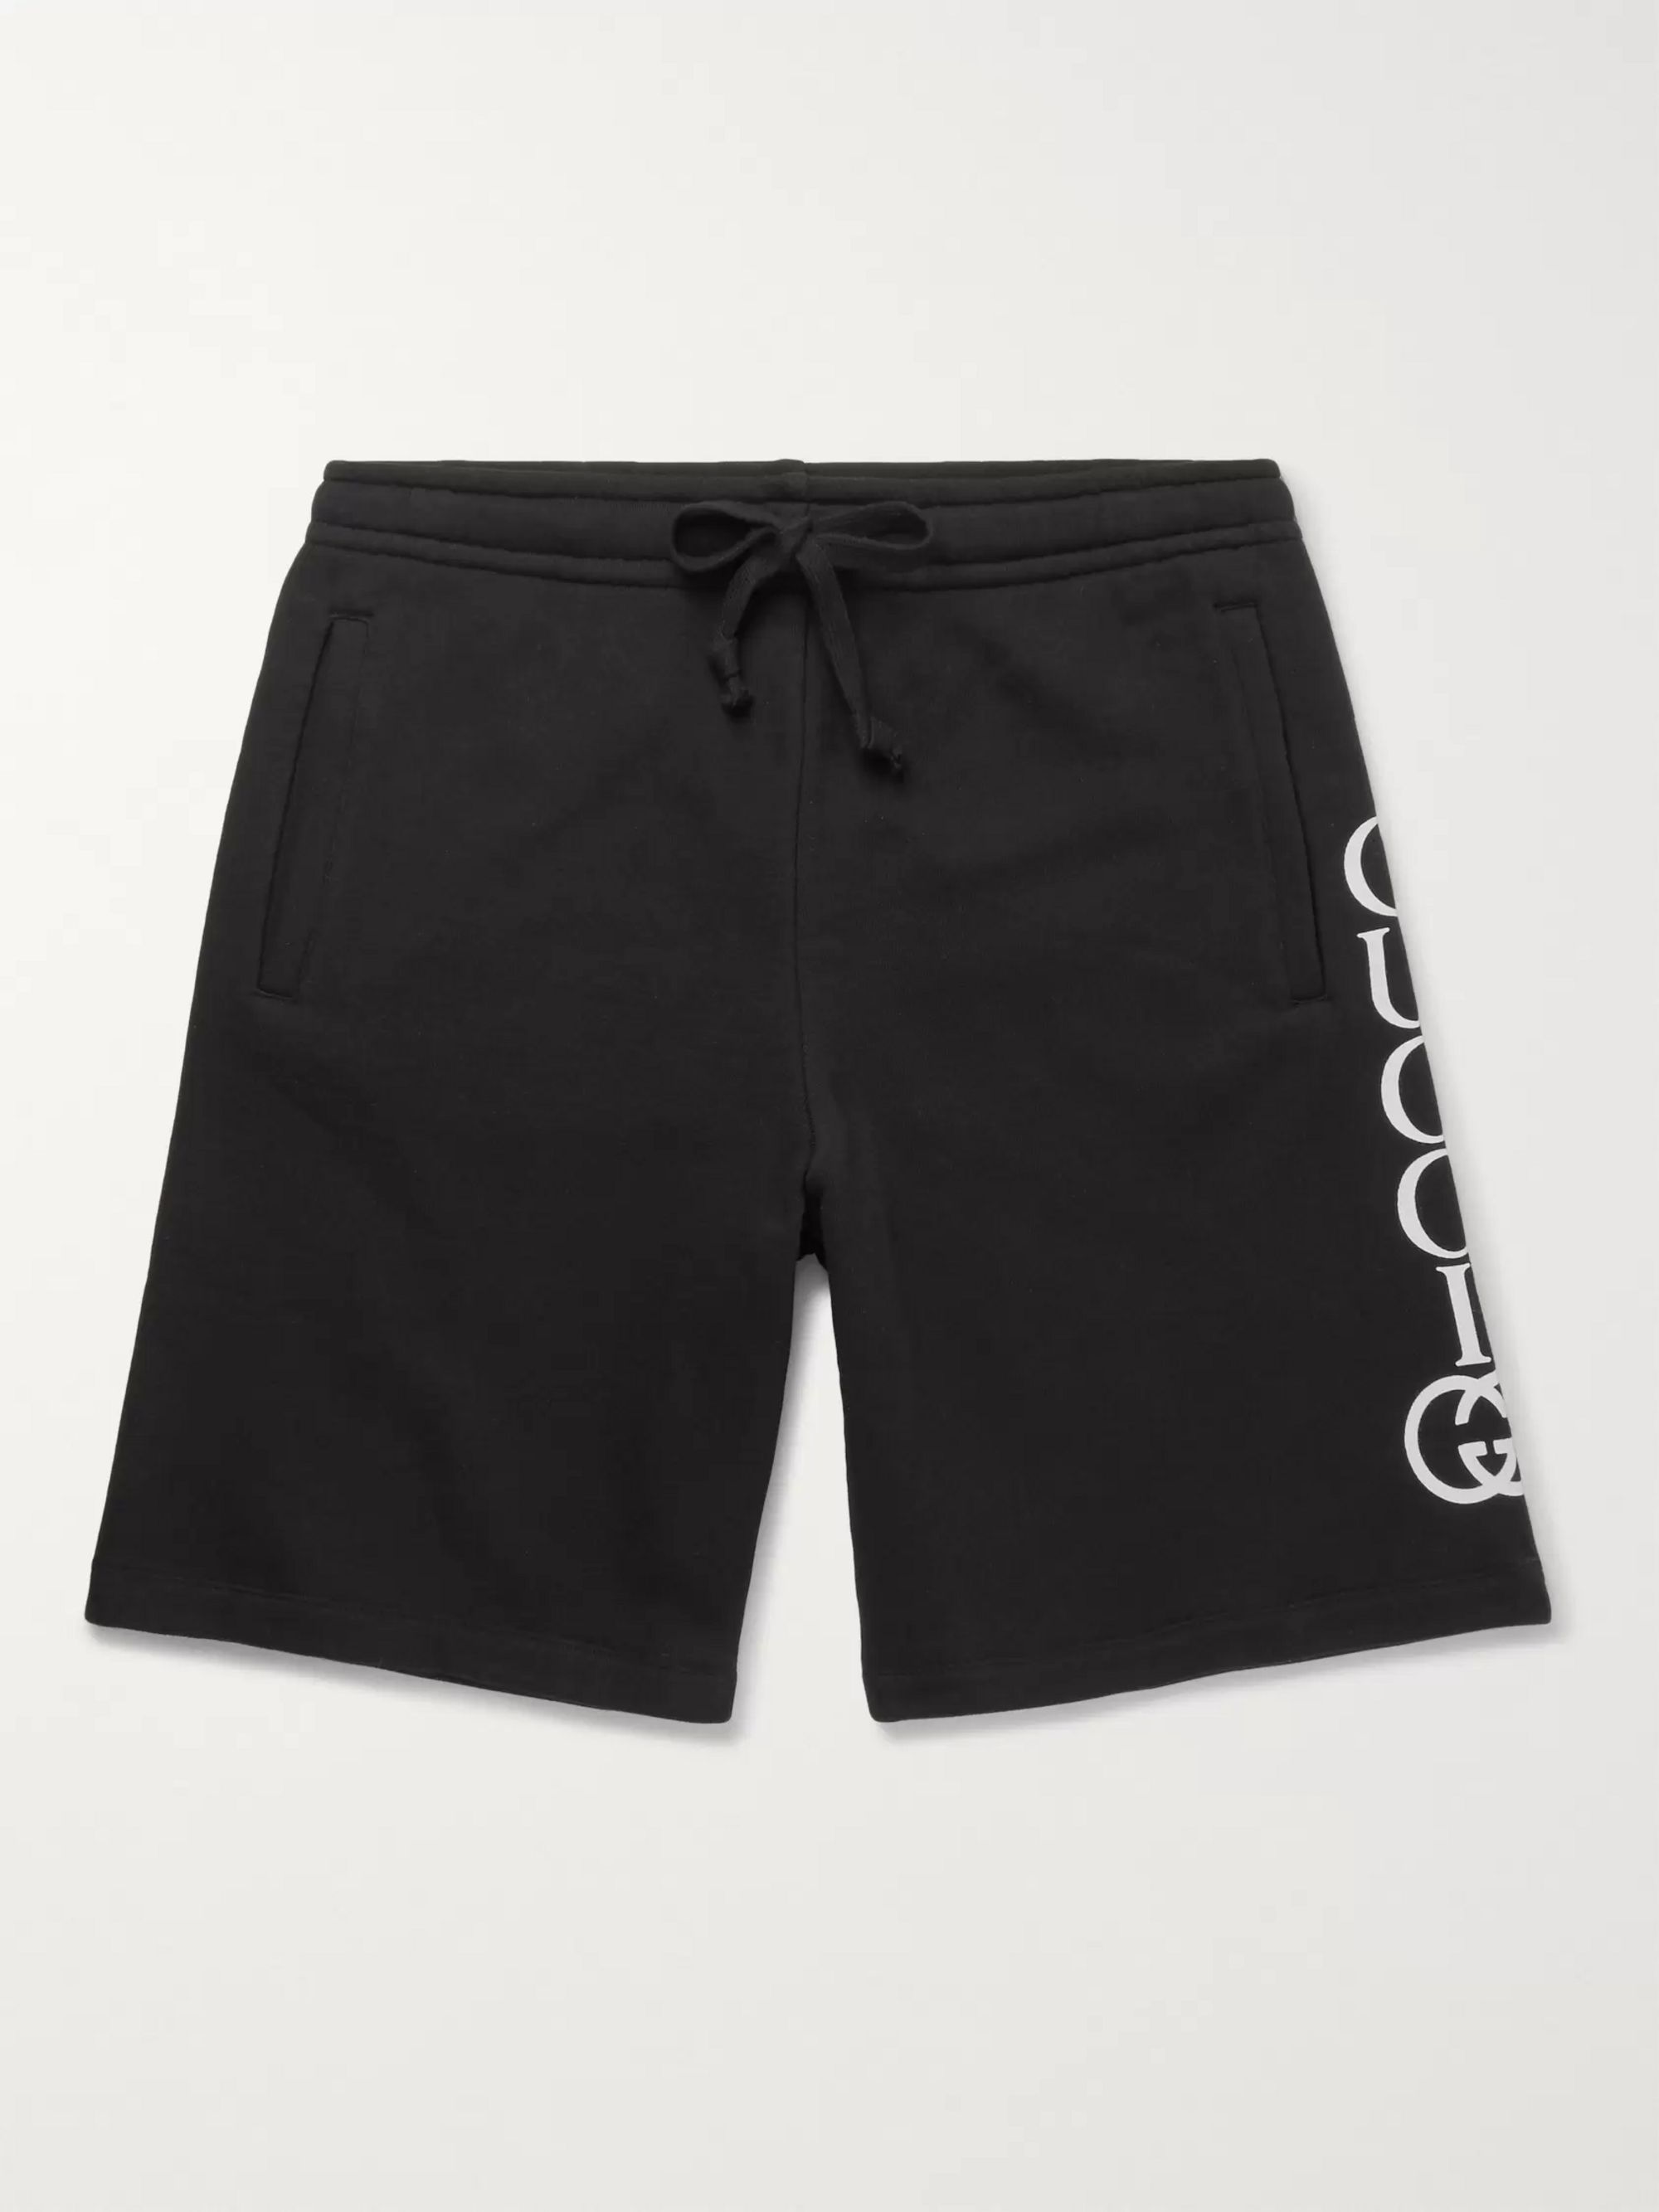 grey gucci shorts